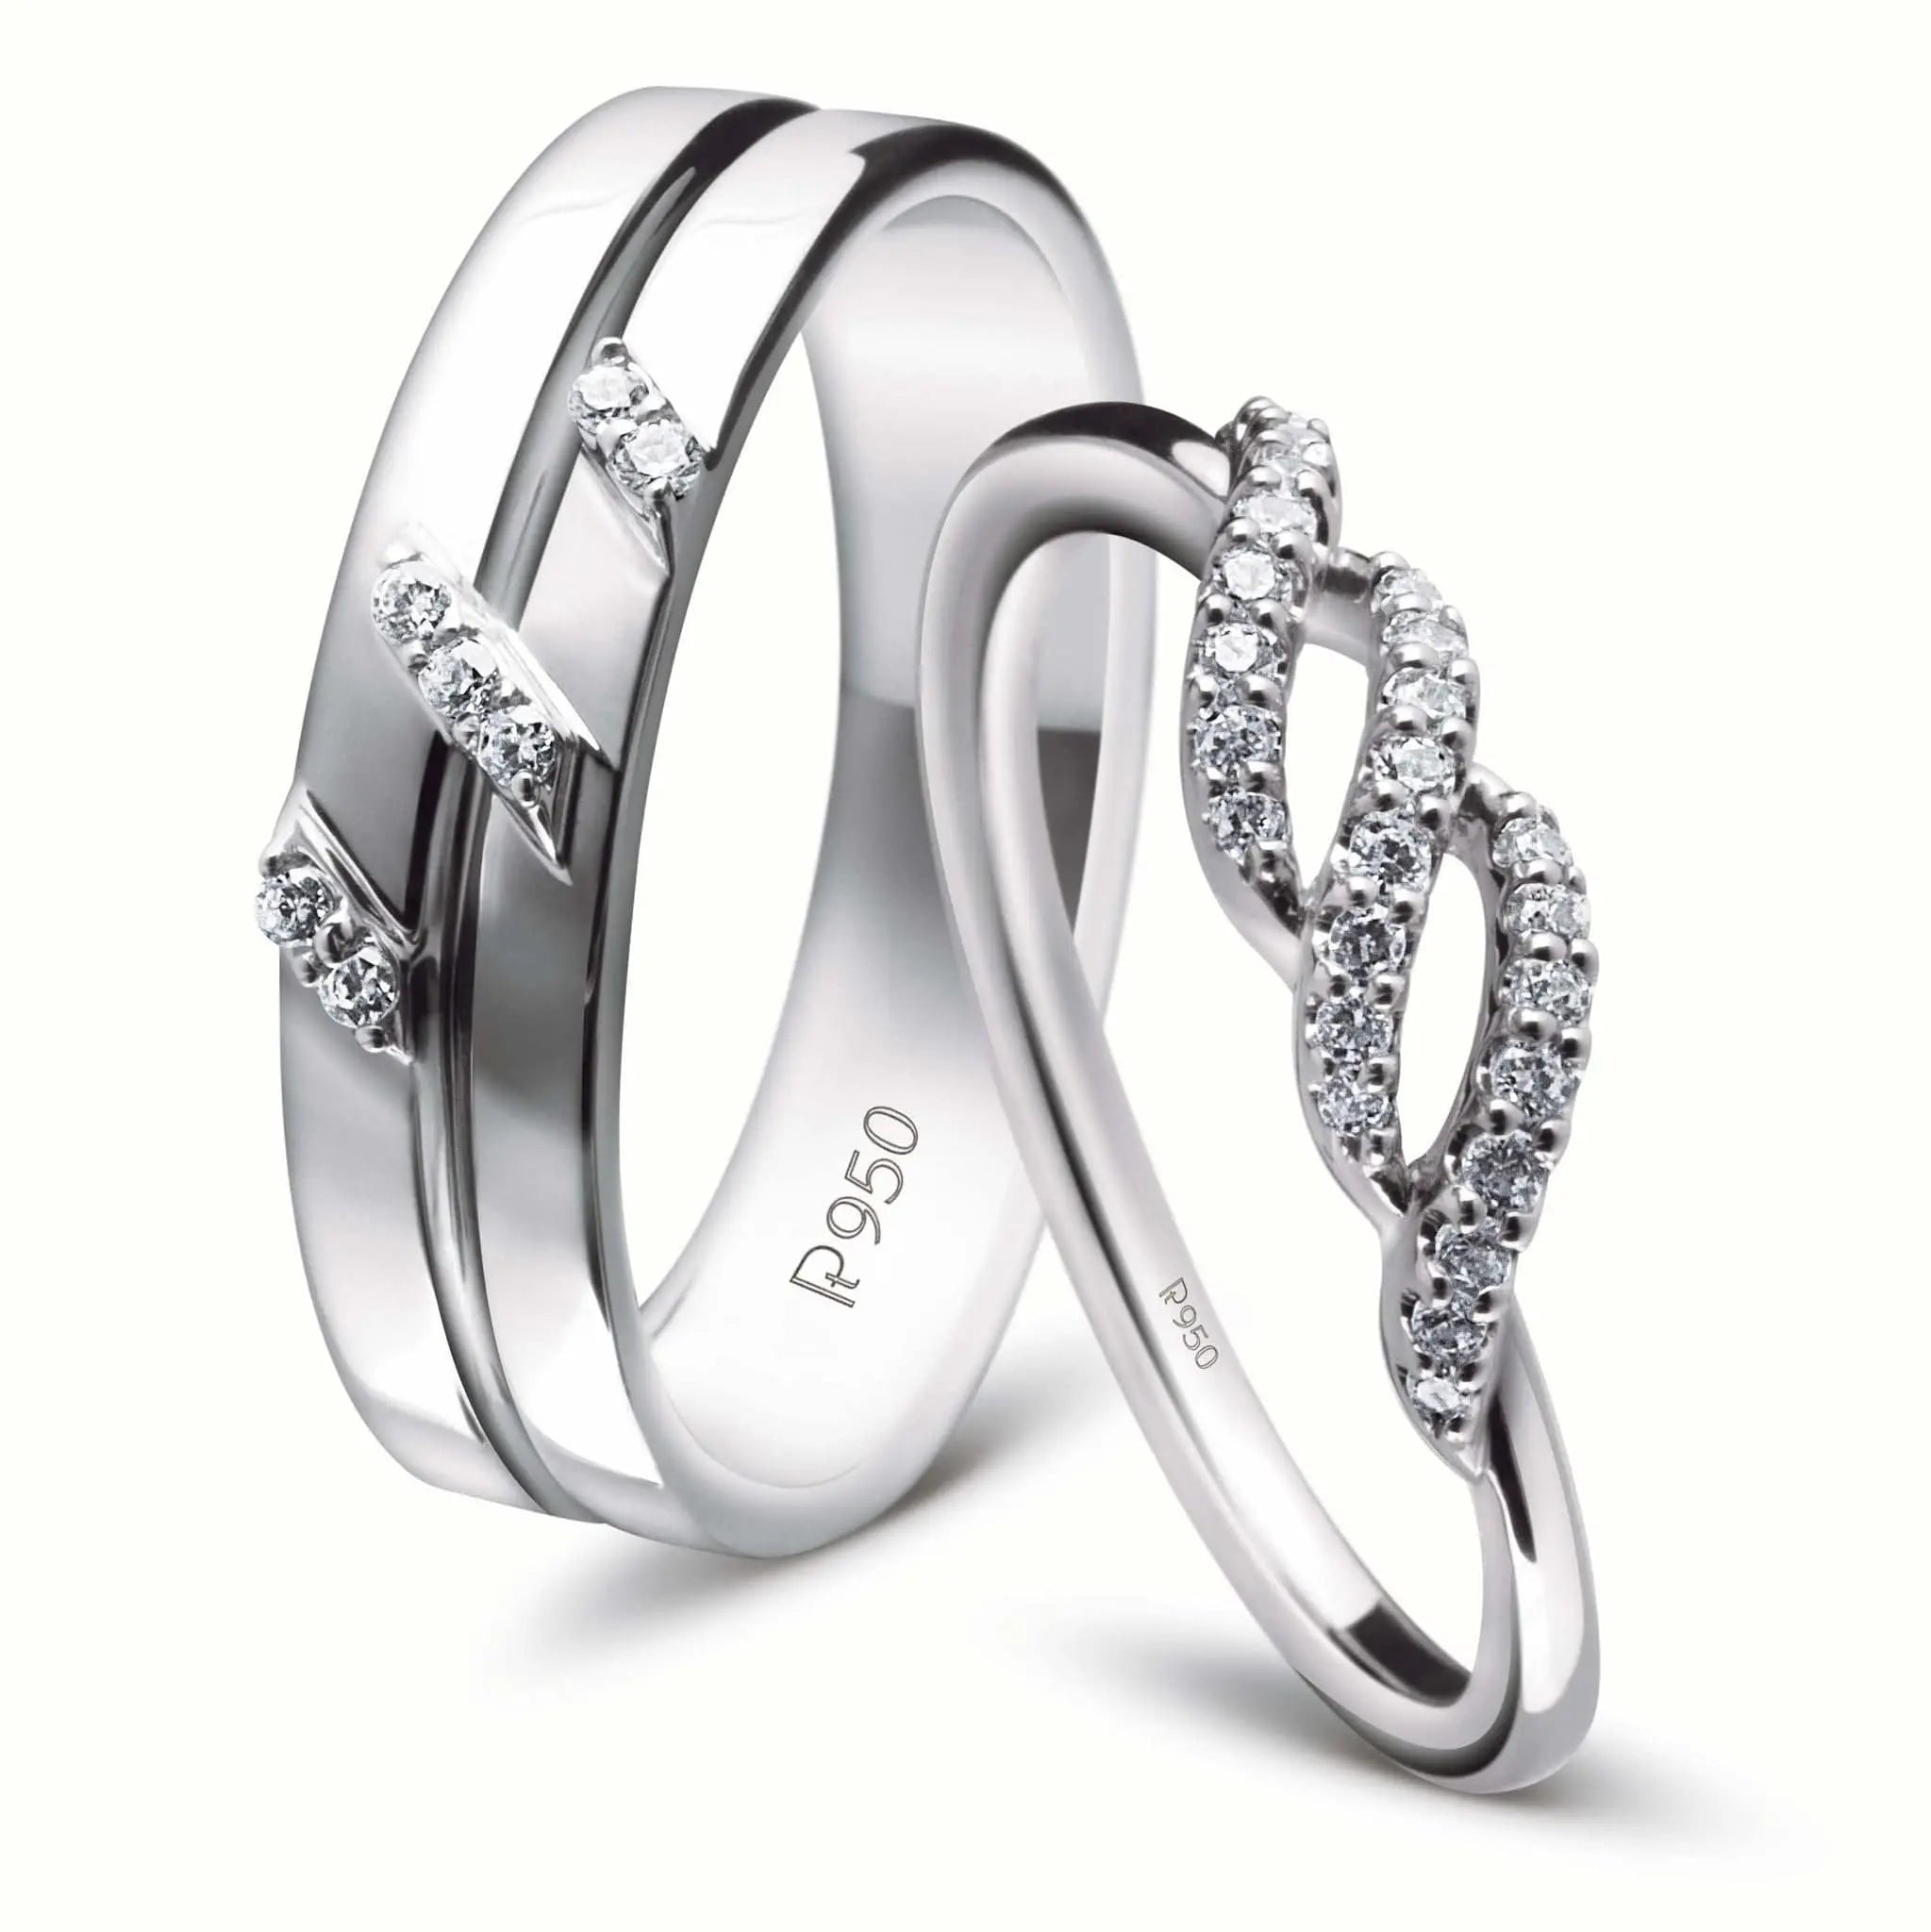 Buy Silver Rings for Women by Karatcart Online  Ajiocom